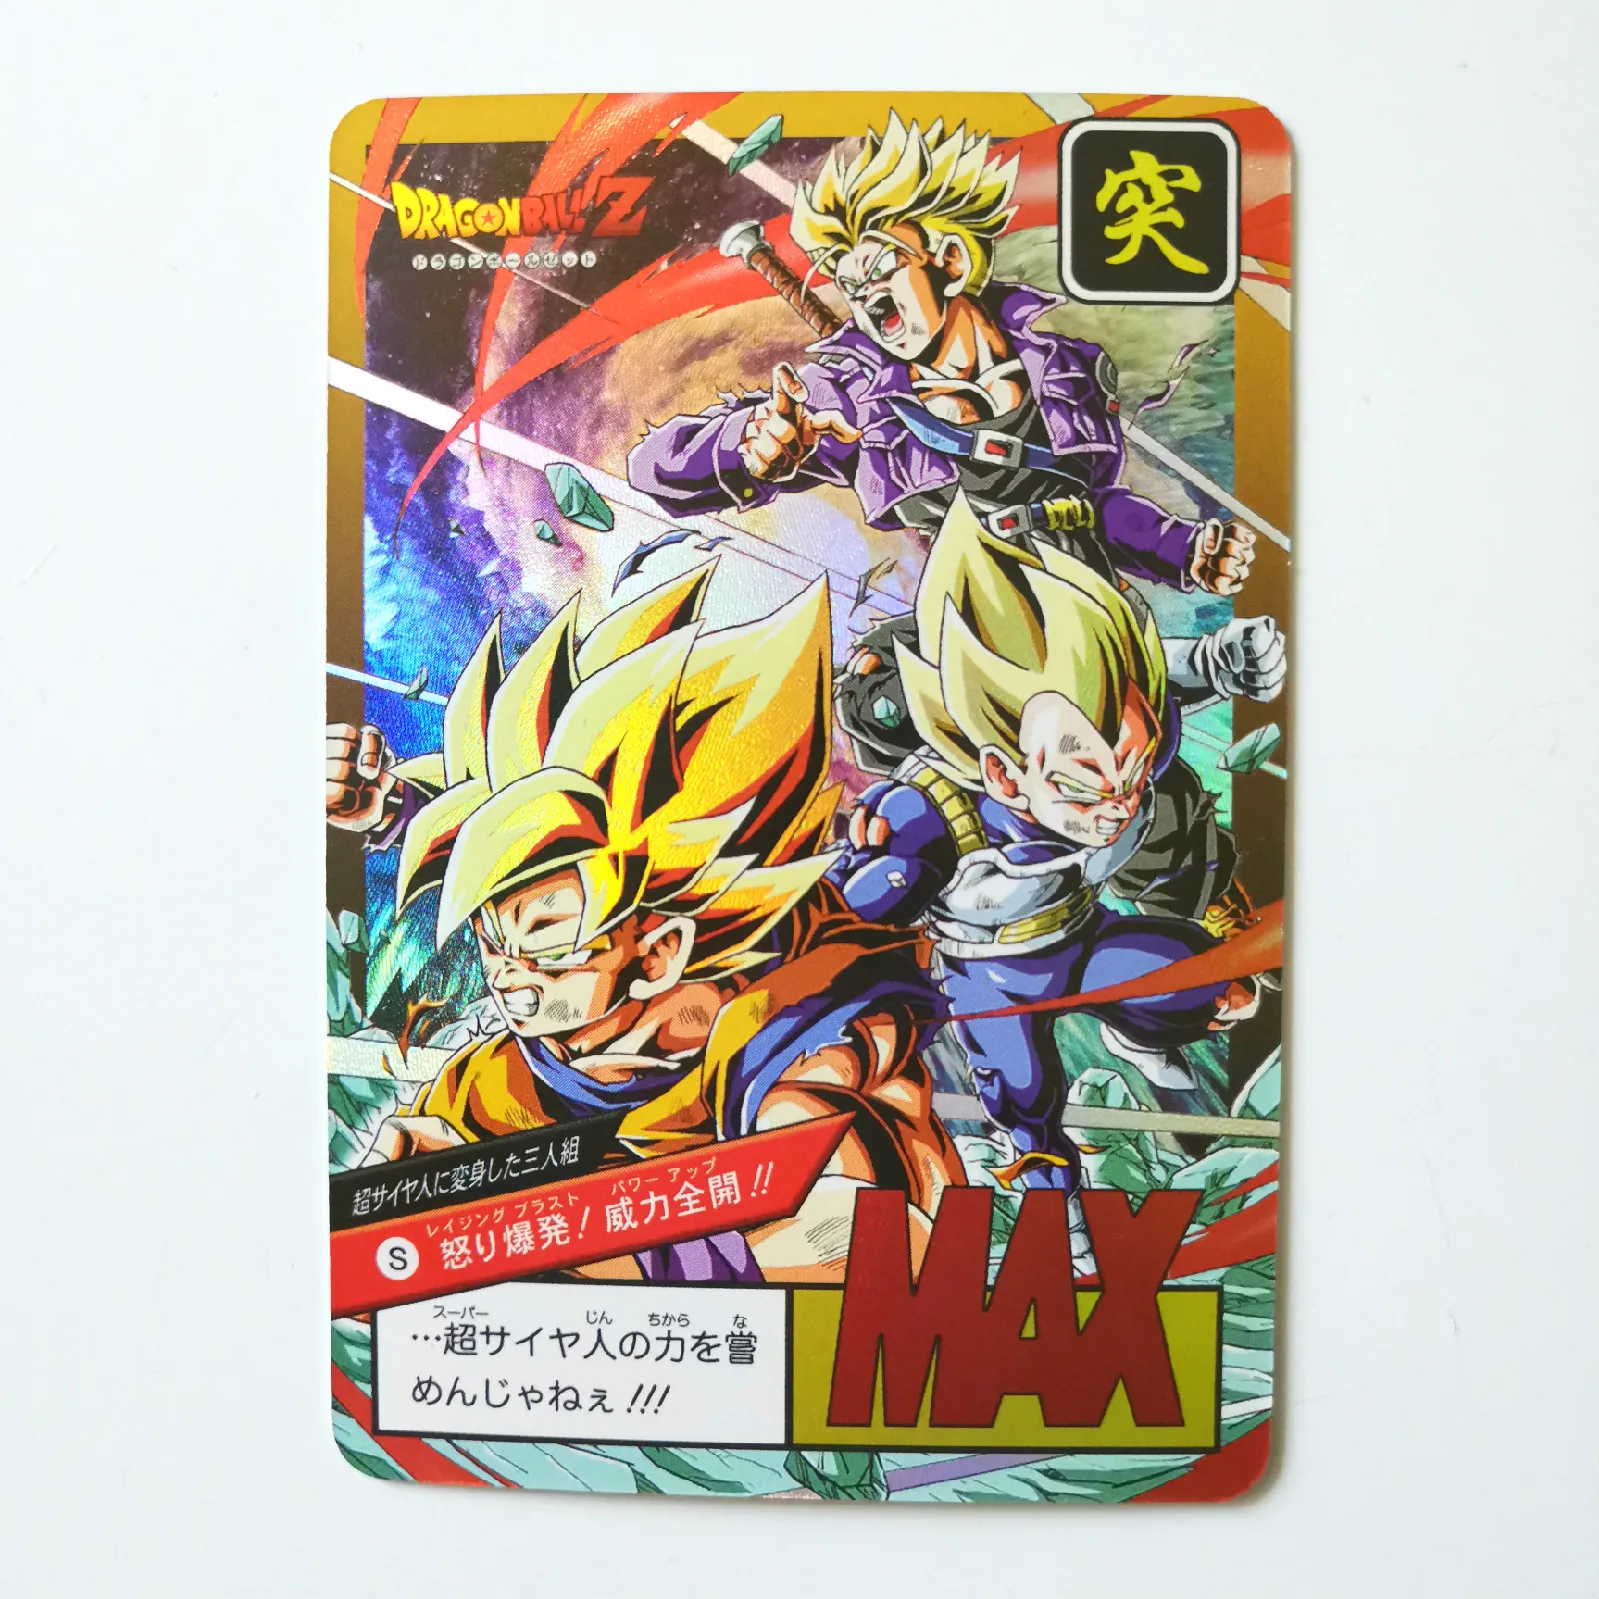 Горячая штамповка Dragon Ball Z Instinct Goku Vegeta Супер Герои битва карточная игра Коллекция аниме-открытки - Цвет: 3ren shabu